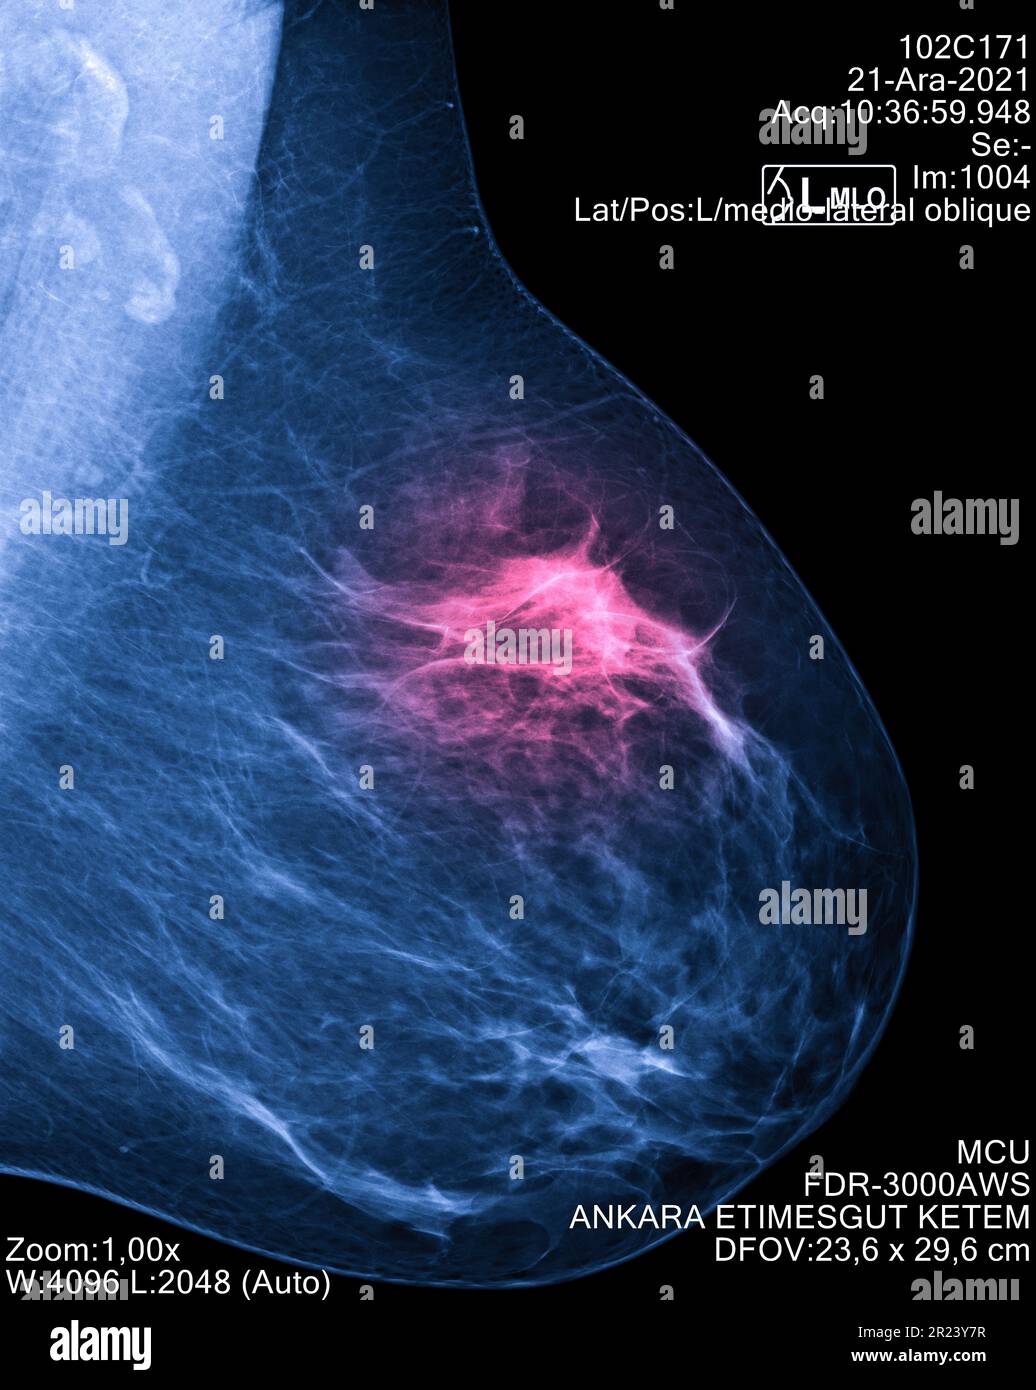 Mammogram radio imaging per la diagnosi di cancro al seno, mostra zona dolore con rosso. Screening radiologico per il rilevamento precoce del cancro al seno. Imaging medicale c Foto Stock